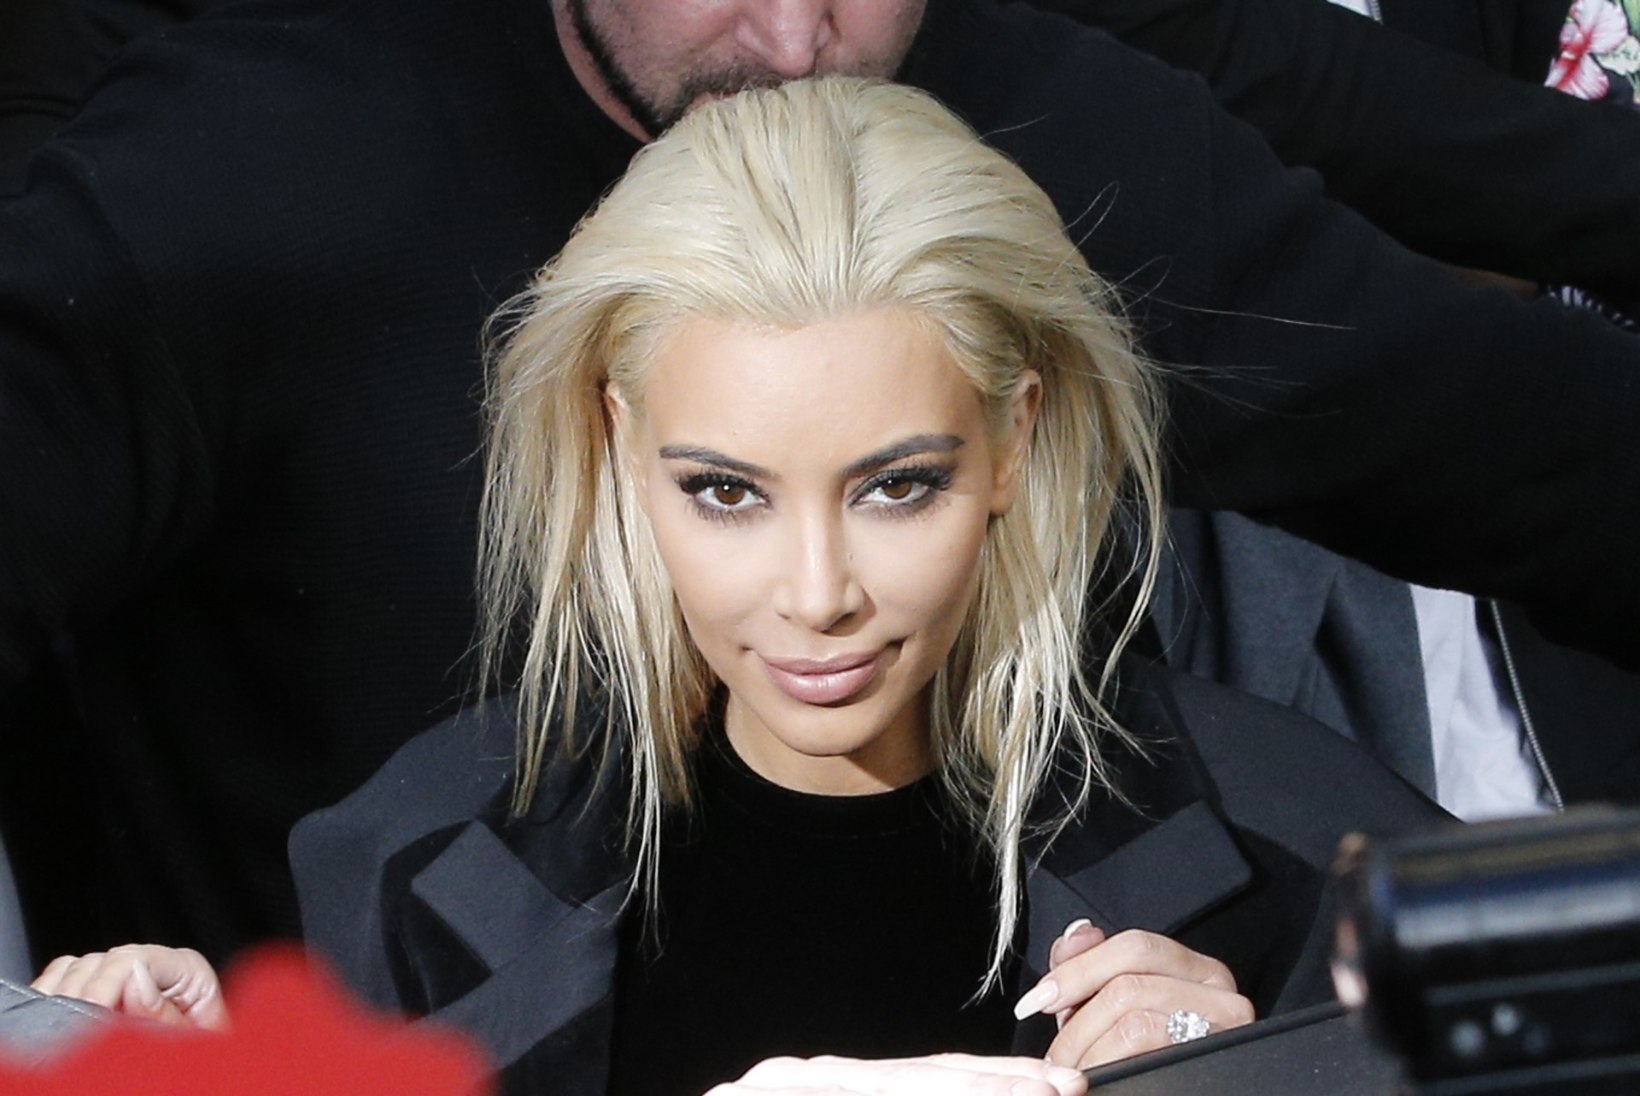 FOTOD: Kim Kardashian värvis juuksed plaatinablondiks!